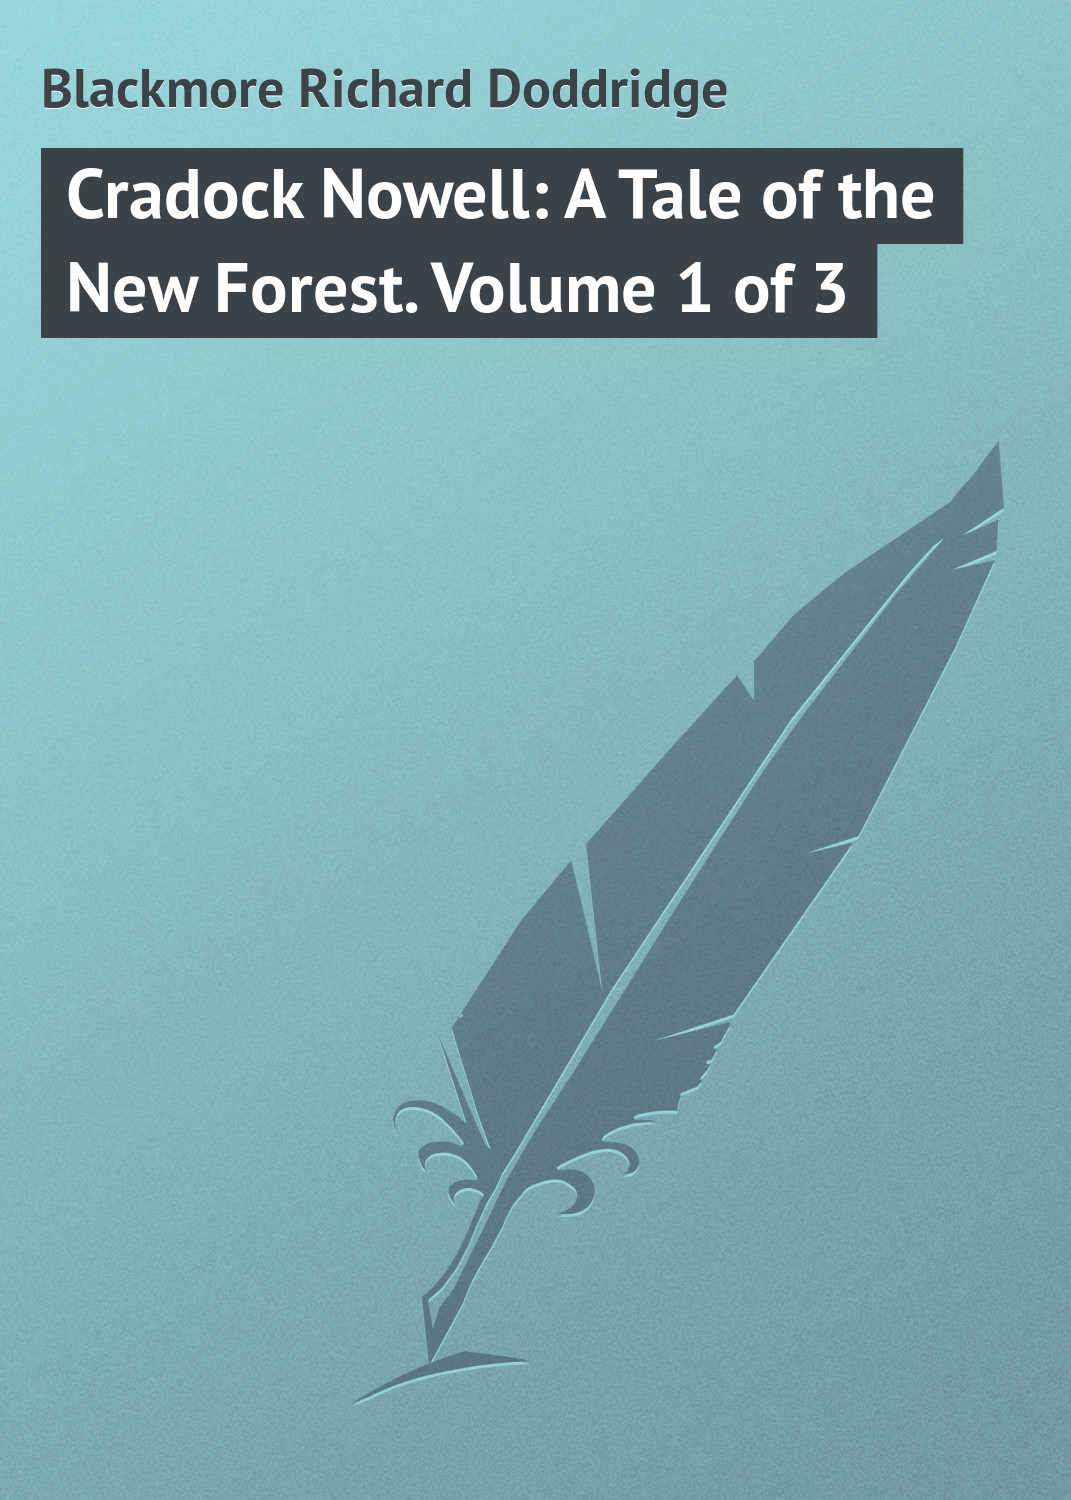 Книга Cradock Nowell: A Tale of the New Forest. Volume 1 of 3 из серии , созданная Richard Blackmore, может относится к жанру Зарубежная классика. Стоимость электронной книги Cradock Nowell: A Tale of the New Forest. Volume 1 of 3 с идентификатором 23148339 составляет 5.99 руб.